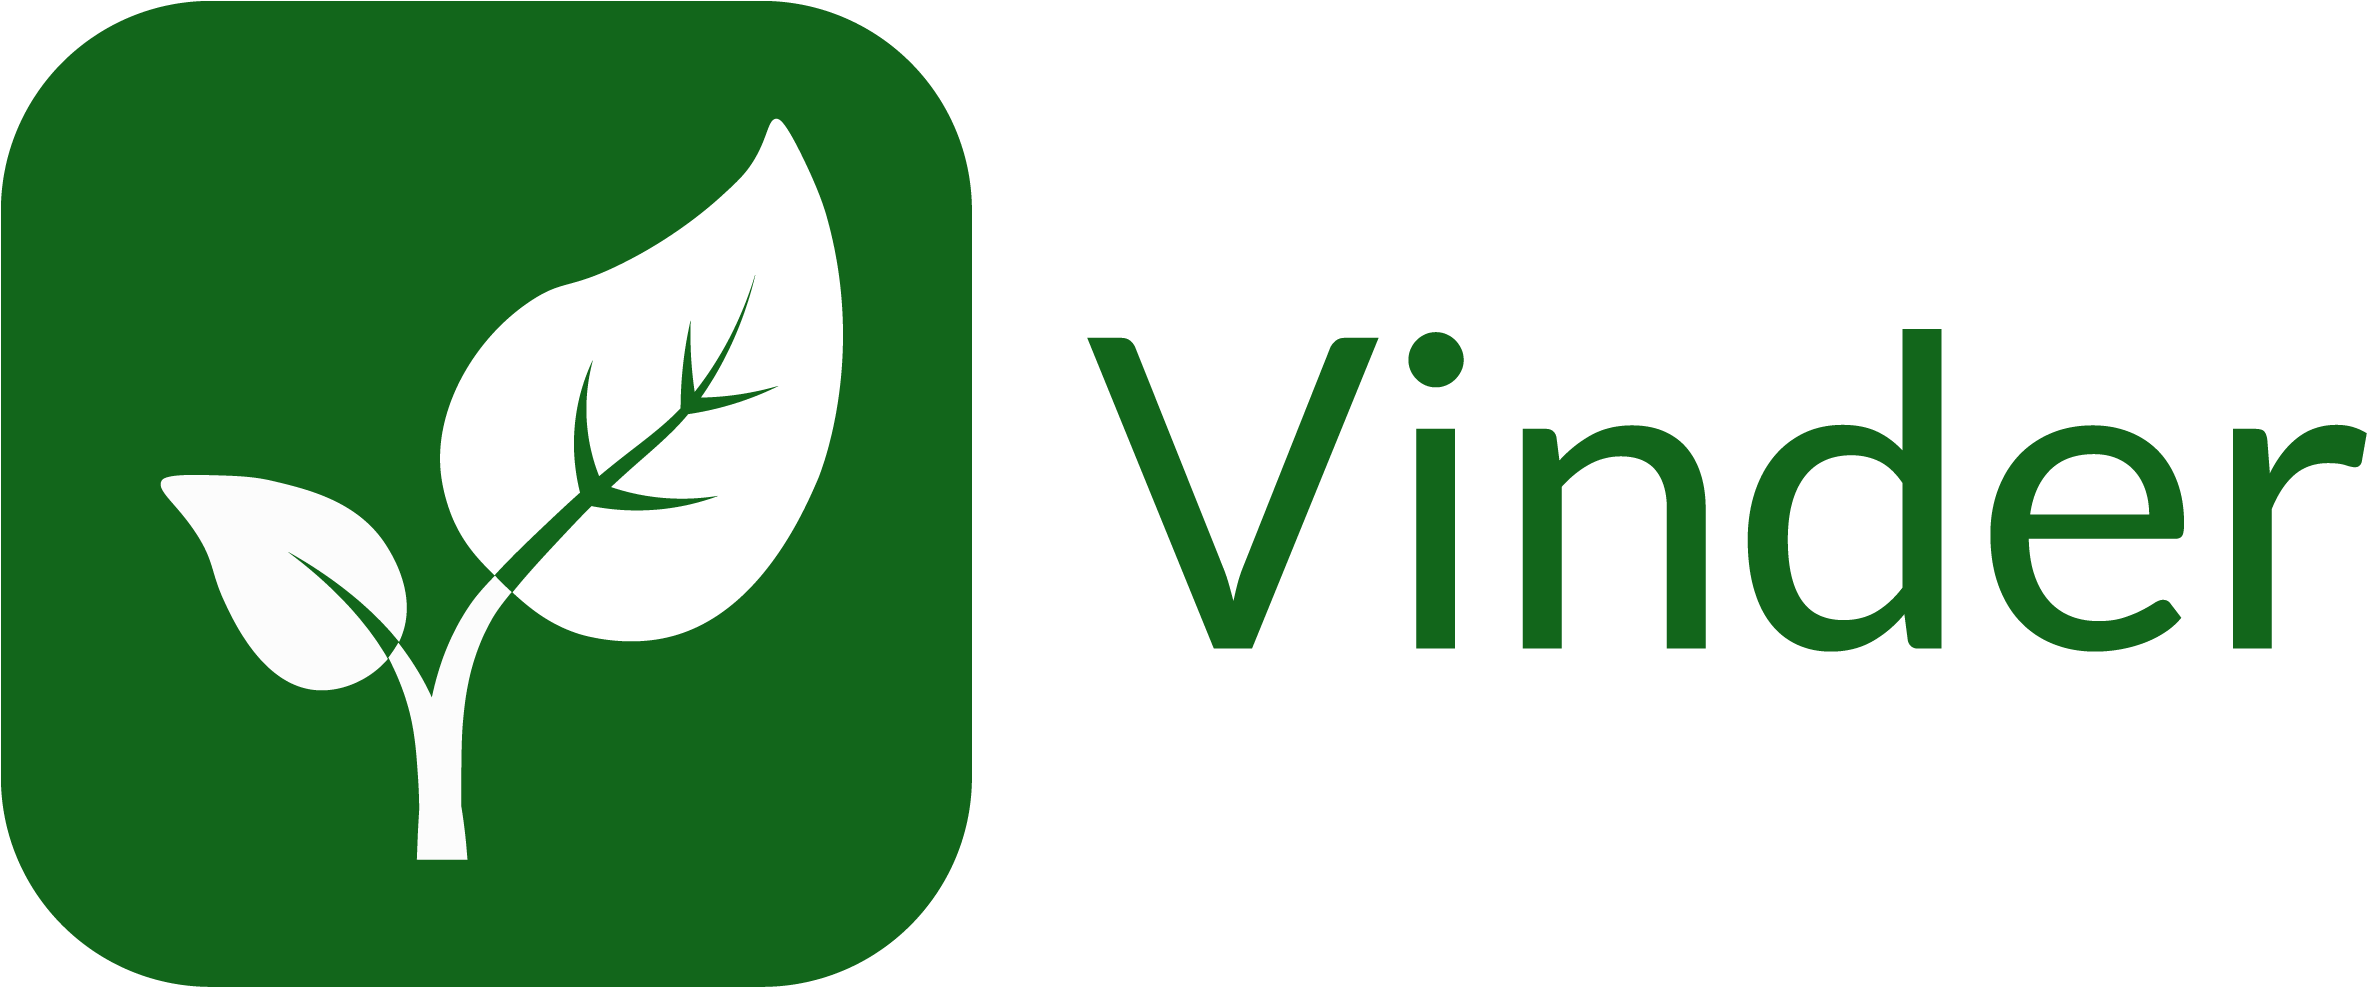 Get Involved - Veggie Vinder Logo (2375x986)